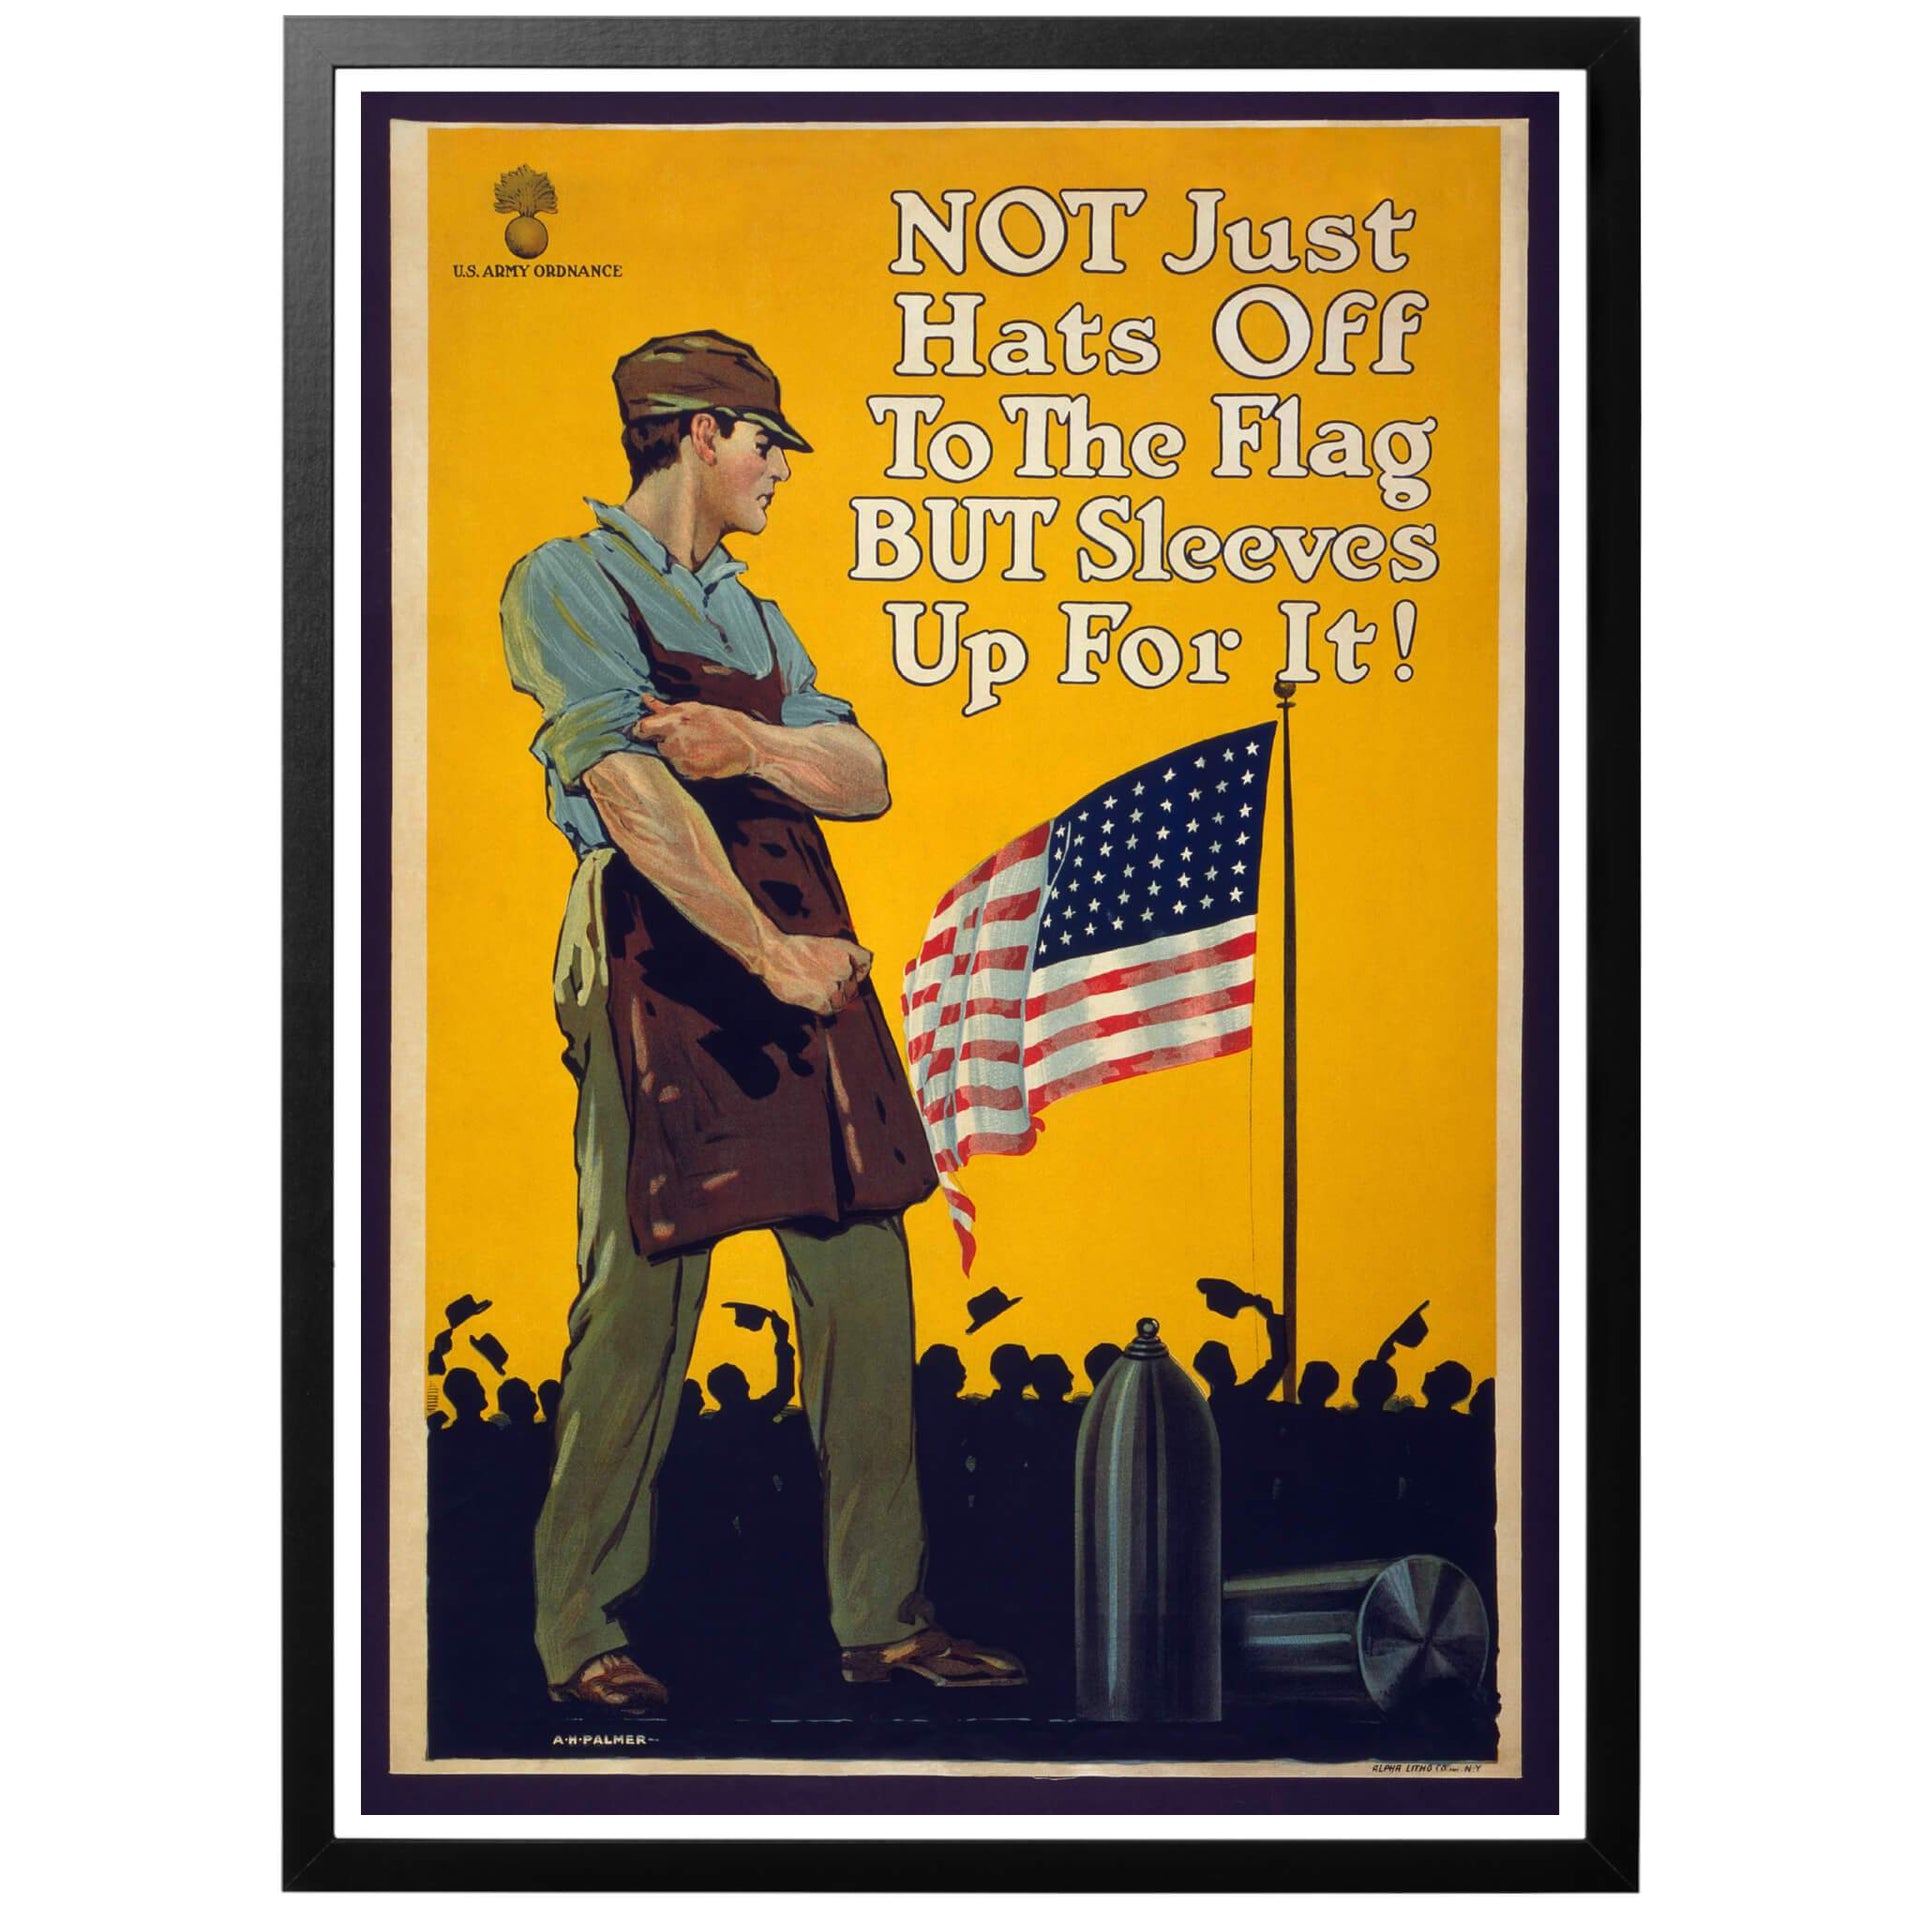 Not just hats off to the flag but sleeves up for it! - Amerikansk affisch publicerad 1917 som visar en krigsmaterielsarbetare som tittar upp mot den Amerikanska flaggan. Affischen skapades för att uppmuntra arbete i industrin för krigsmateriel som behövdes till kriget i Europa.